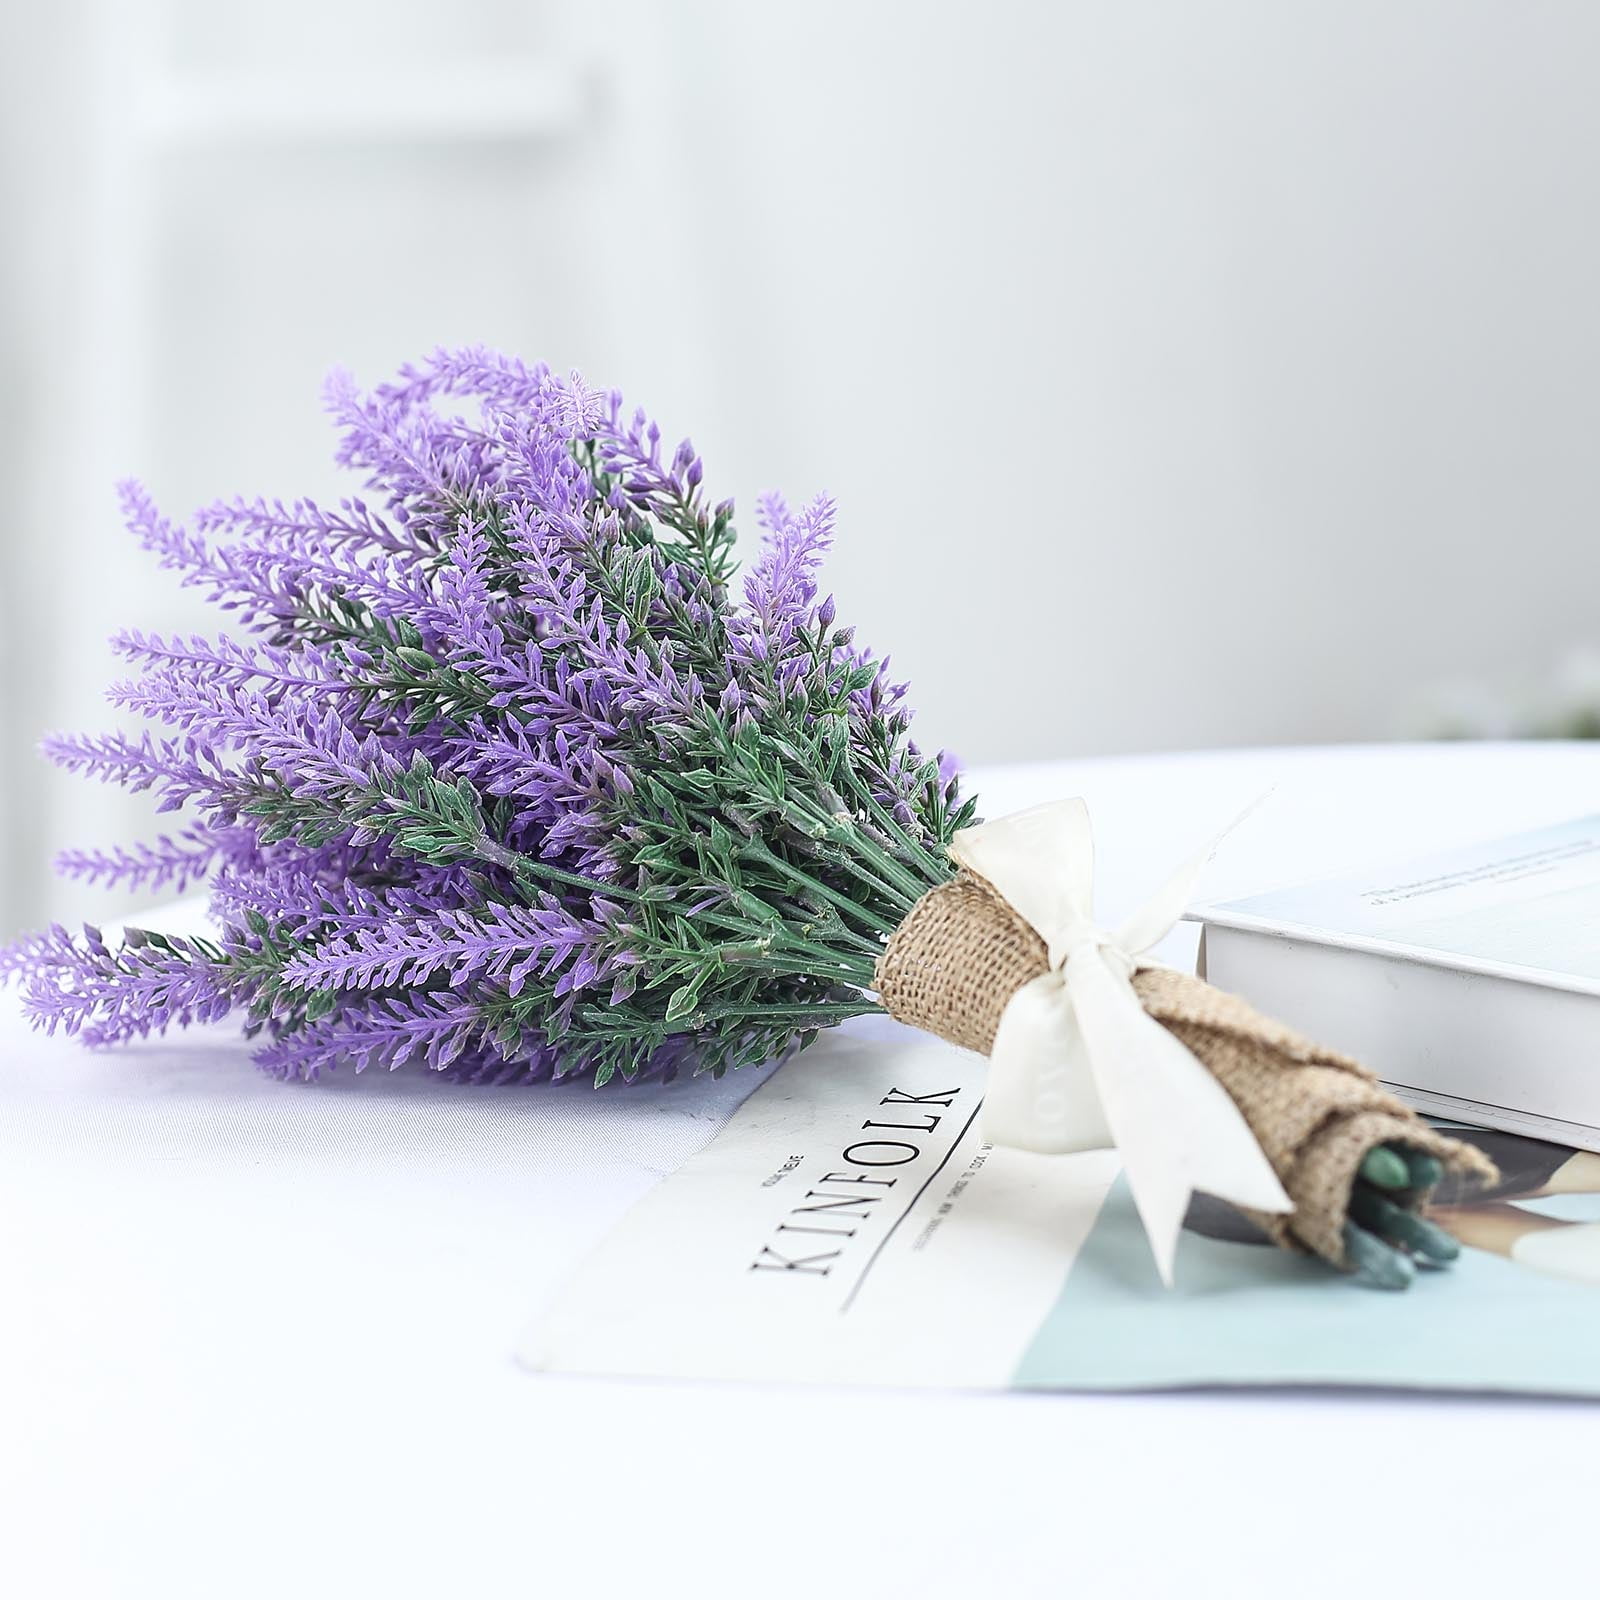 Details about   Romantic Decoration lavender flower plastic artificial flowers grain decorative 